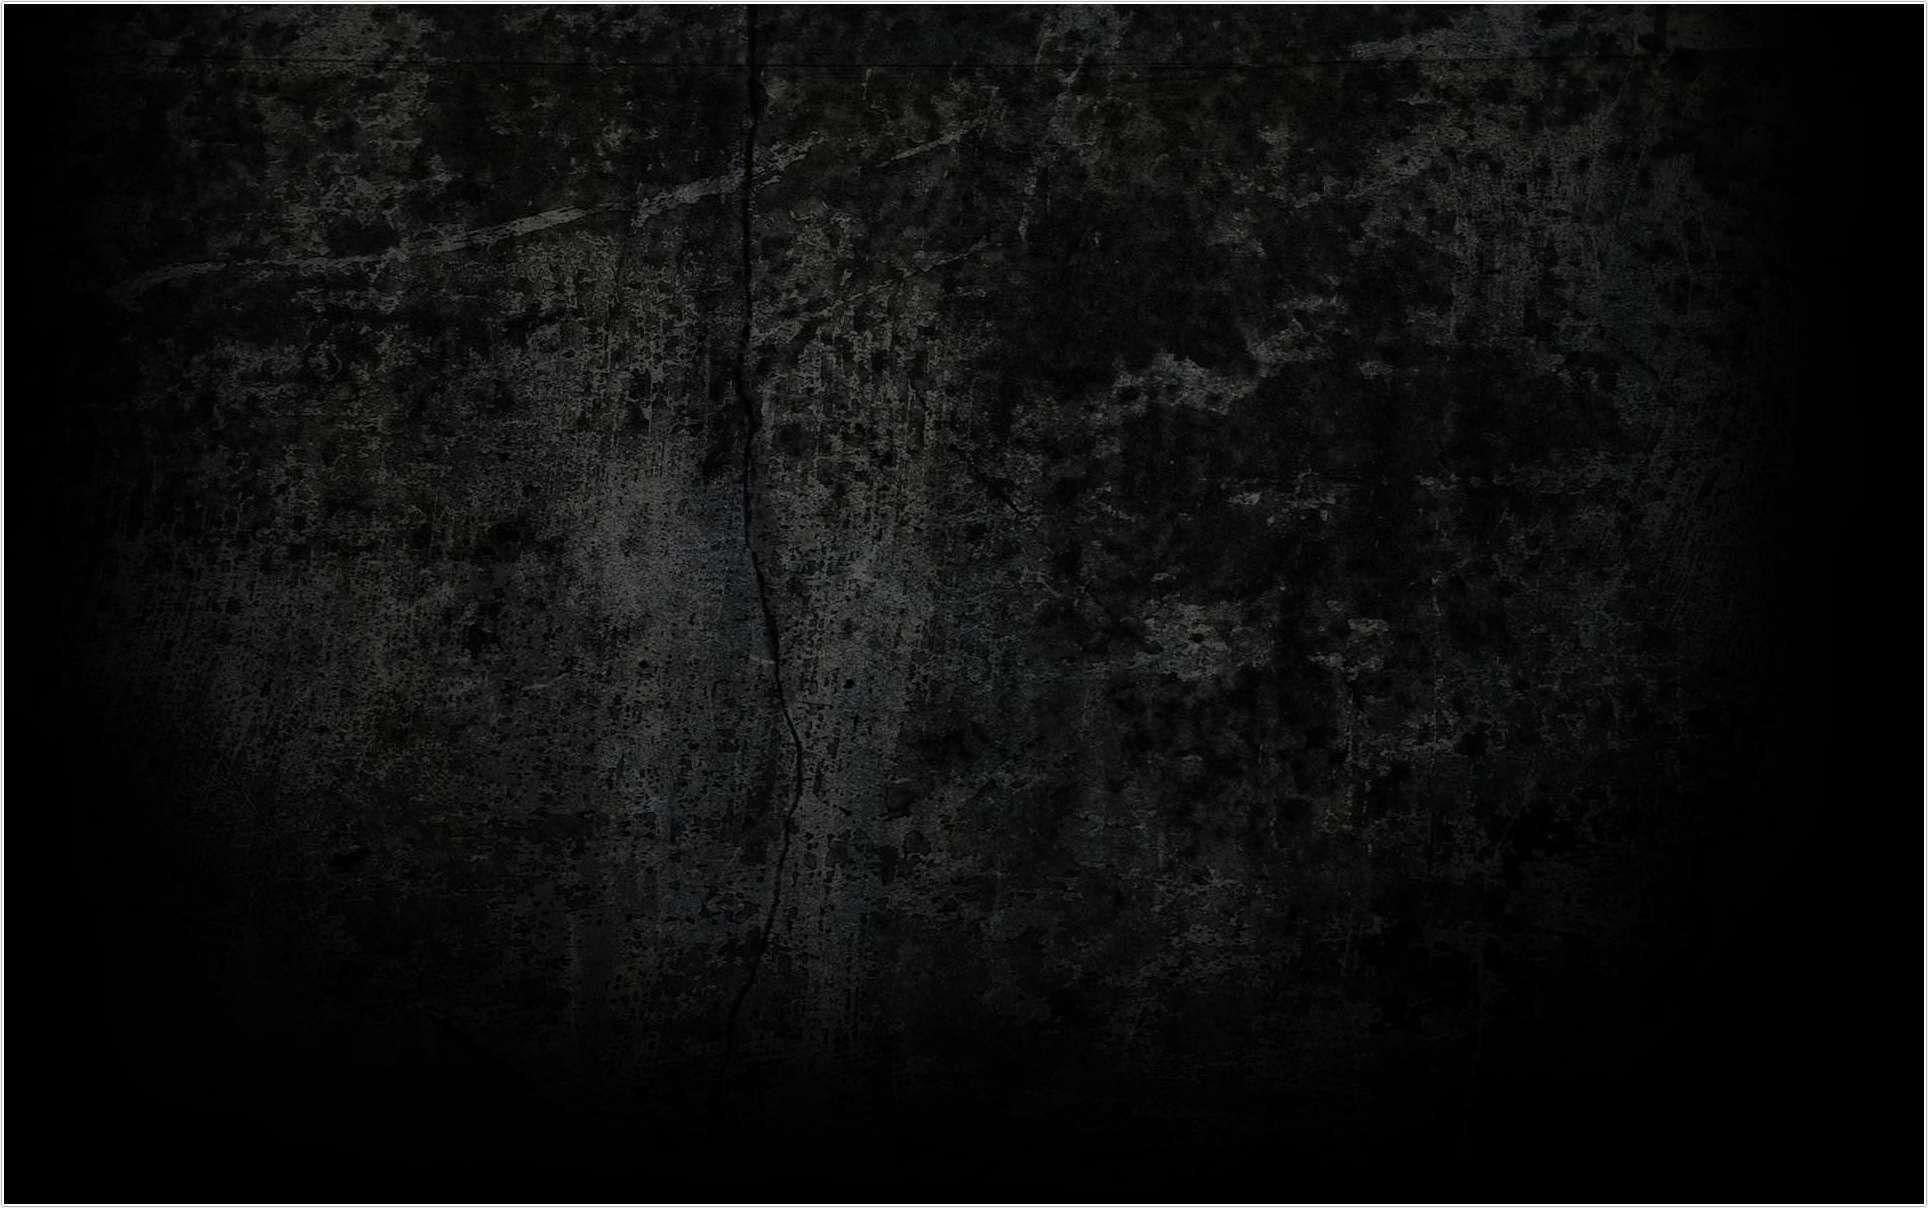 Hình ảnh đen đục Grunge: Khám phá những hình ảnh Grunge đầy bí ẩn với sắc đen đậm. Từ những nét vẽ mờ đến các chi tiết nhỏ, hình ảnh đen đục Grunge sẽ khiến bạn trầm trồ với sức hút đầy ma mị. Xem ngay để cảm nhận không khí u buồn và khát khao huyền bí!